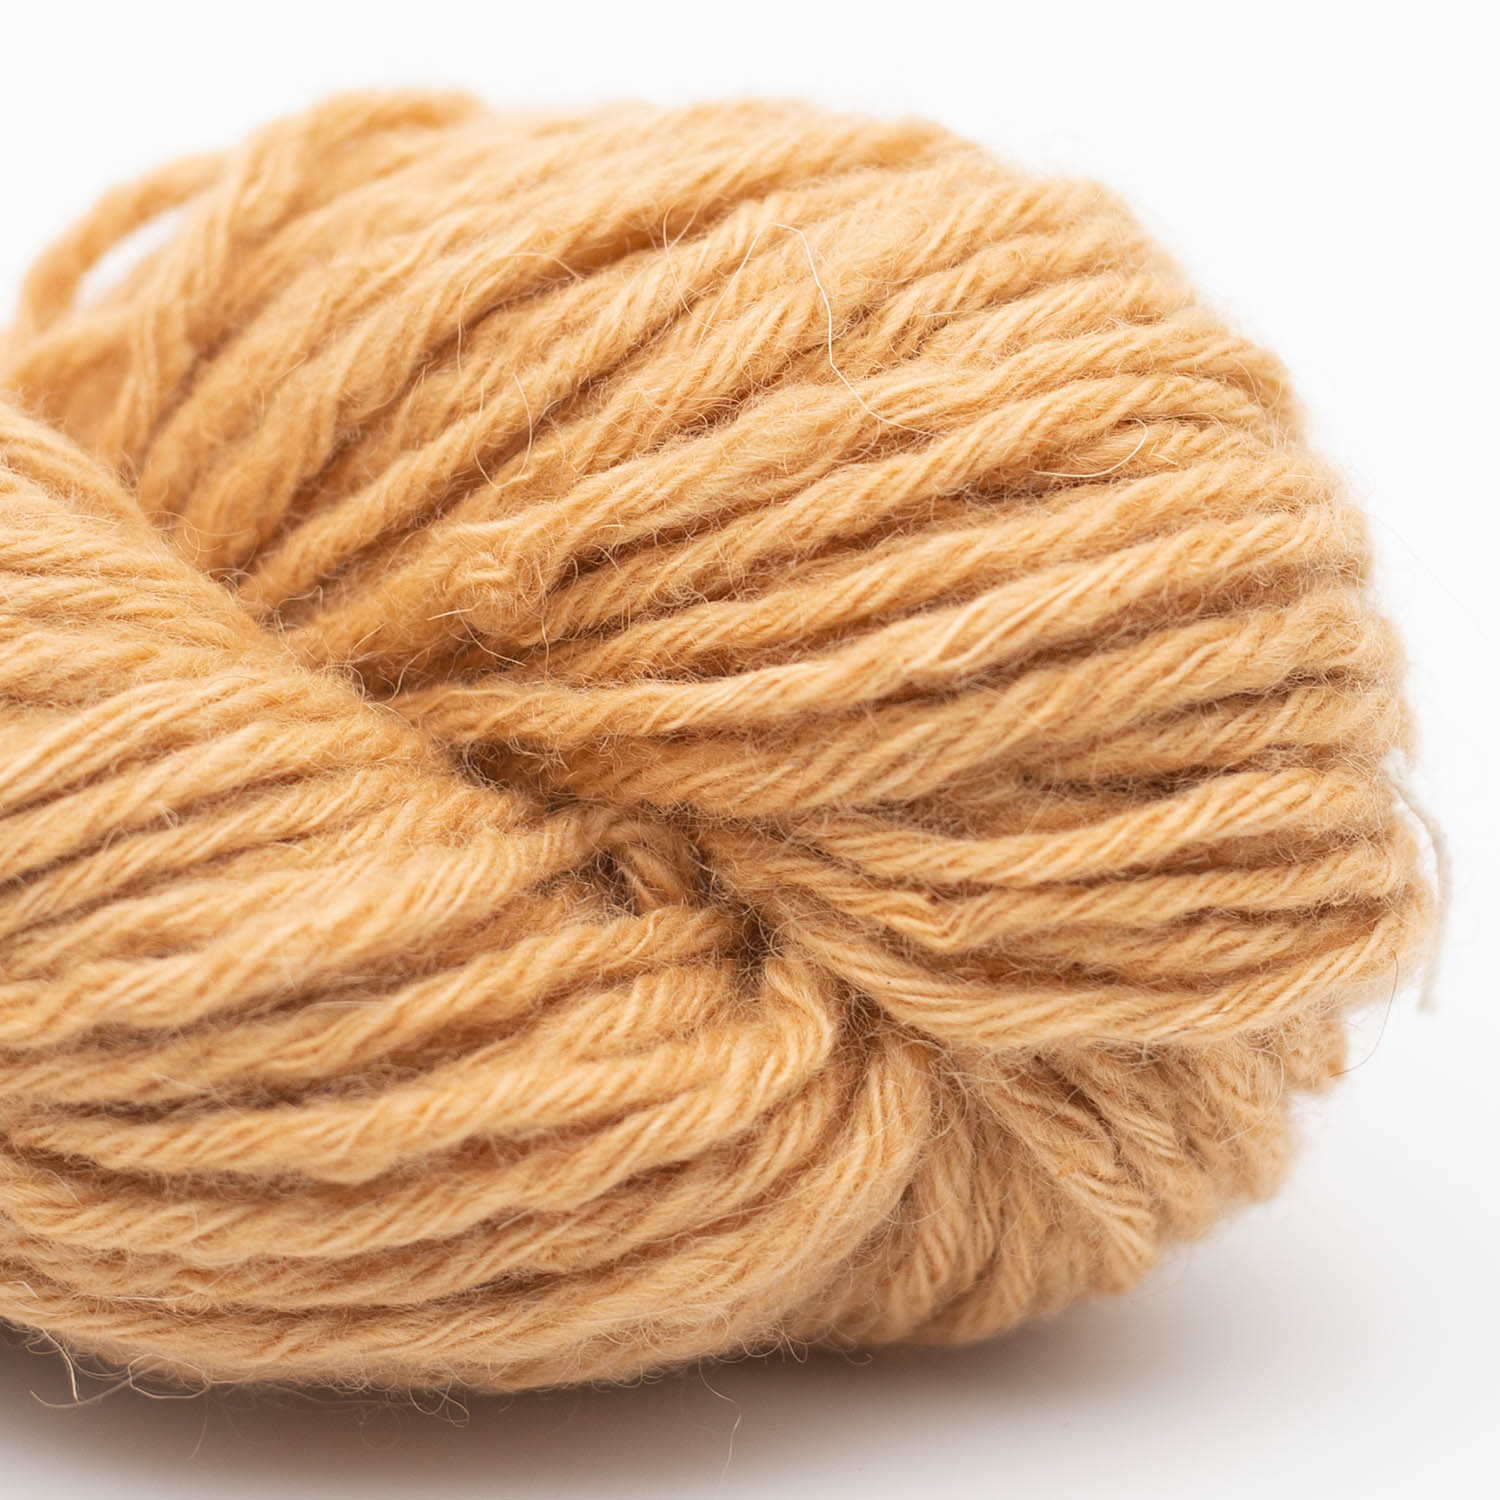 100% Smooth Sartuul Sheep Yarn (Bulky) - Nomadnoos